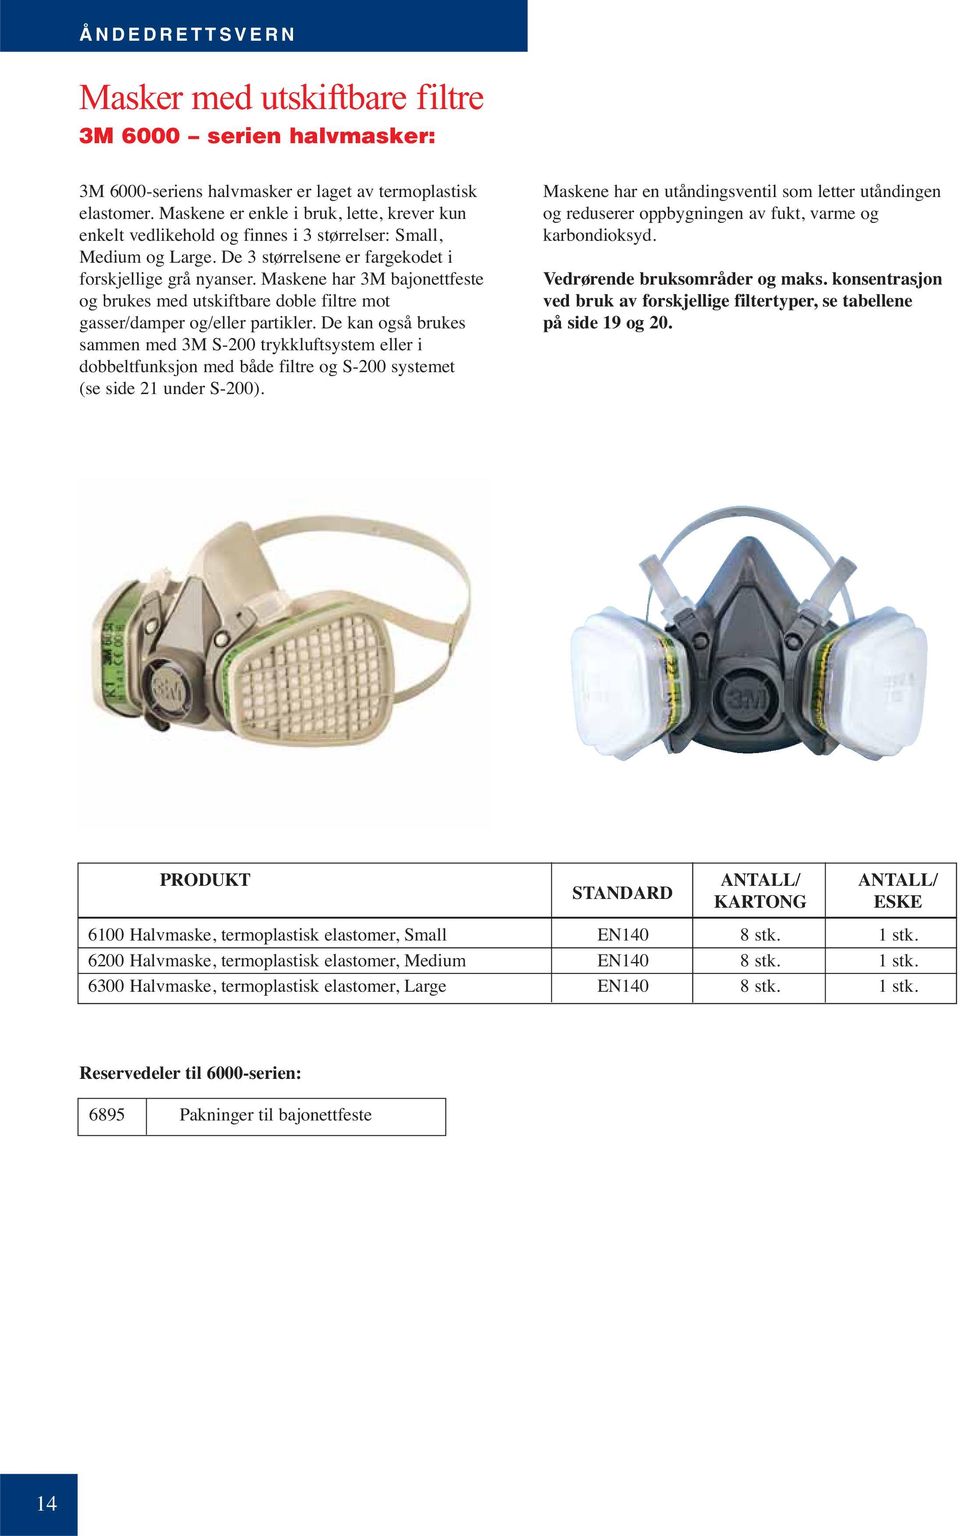 Maskene har 3M bajonettfeste og brukes med utskiftbare doble filtre mot gasser/damper og/eller partikler.